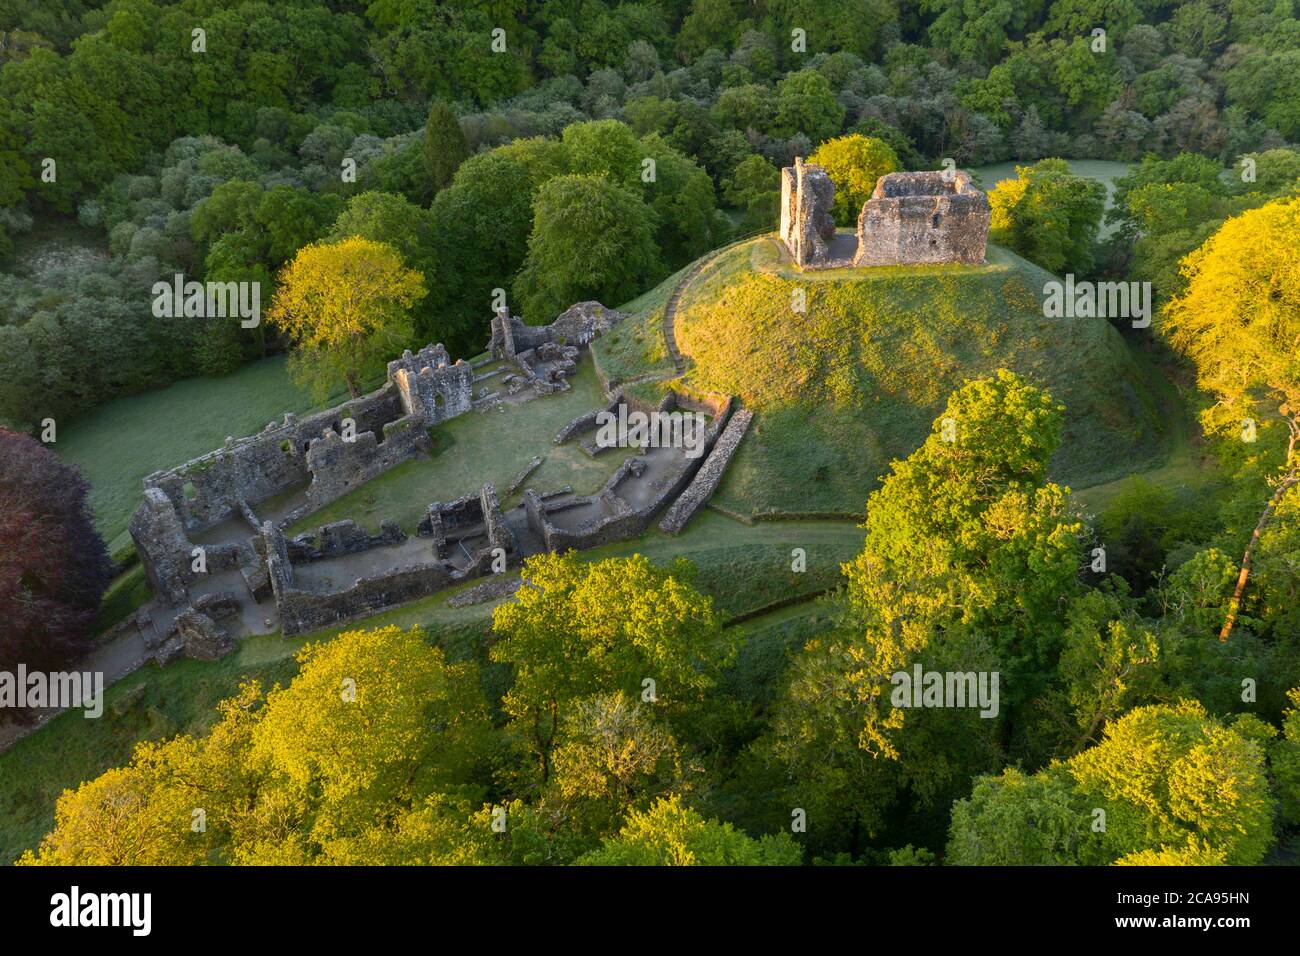 Immagine aerea che mostra le rovine del castello di Okehampton in una mattina di primavera, Okehampton, Devon, Inghilterra, Regno Unito, Europa Foto Stock